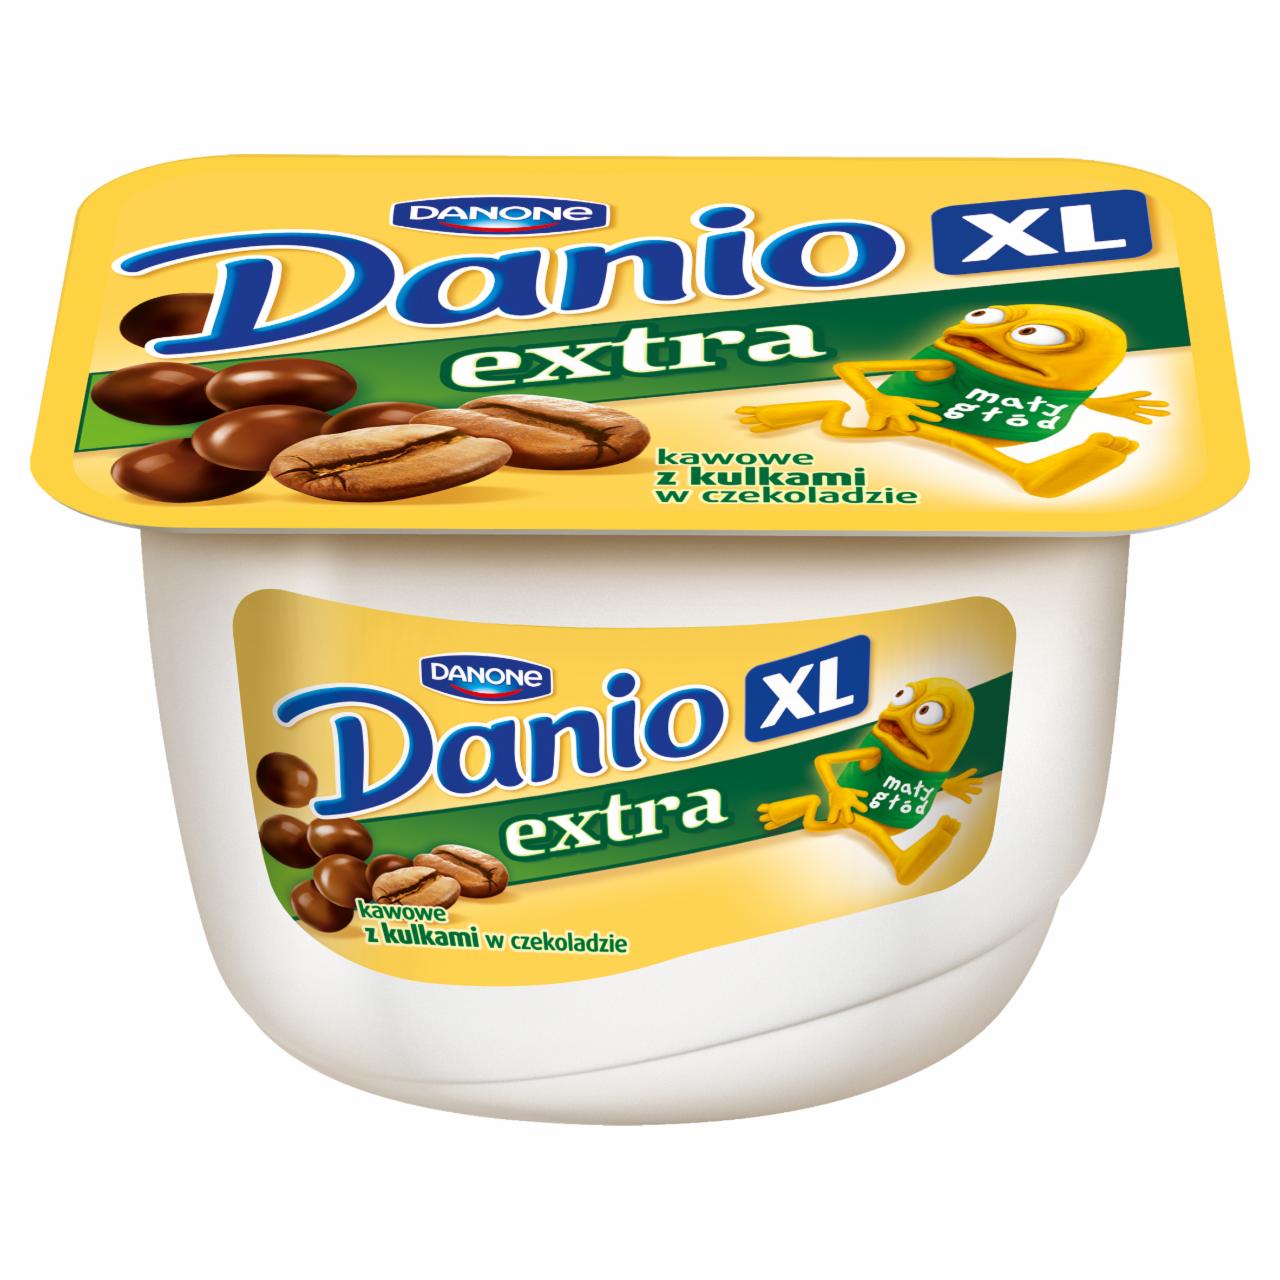 Zdjęcia - Danone Danio XL extra Serek homogenizowany kawowy z kulkami w czekoladzie 180 g